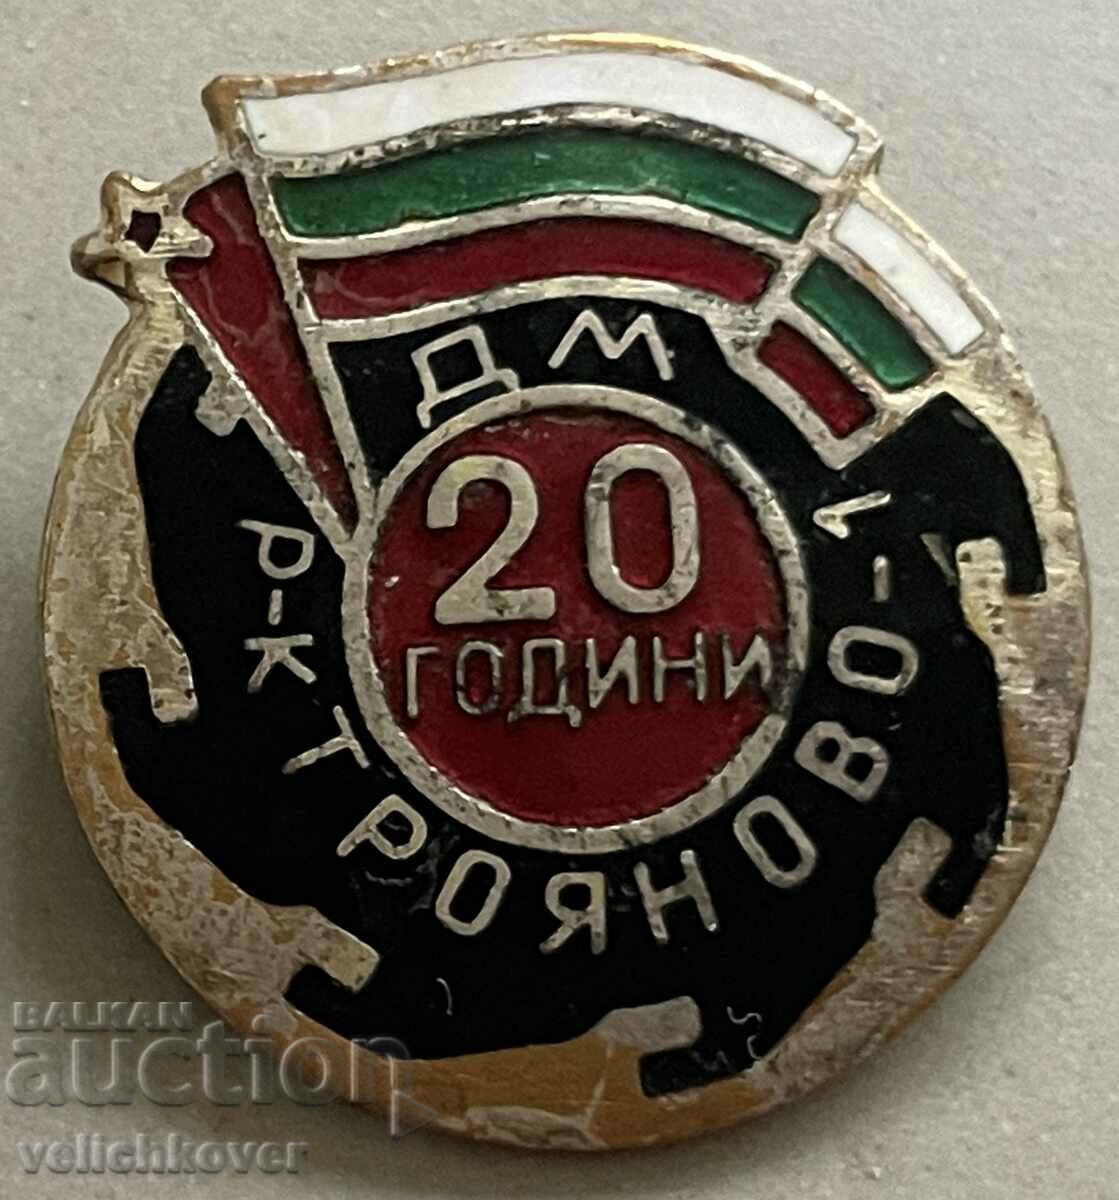 33863 Βουλγαρία υπογράφει 20 χρόνια ανθρακωρυχείο Troyanovo 1 σμάλτο